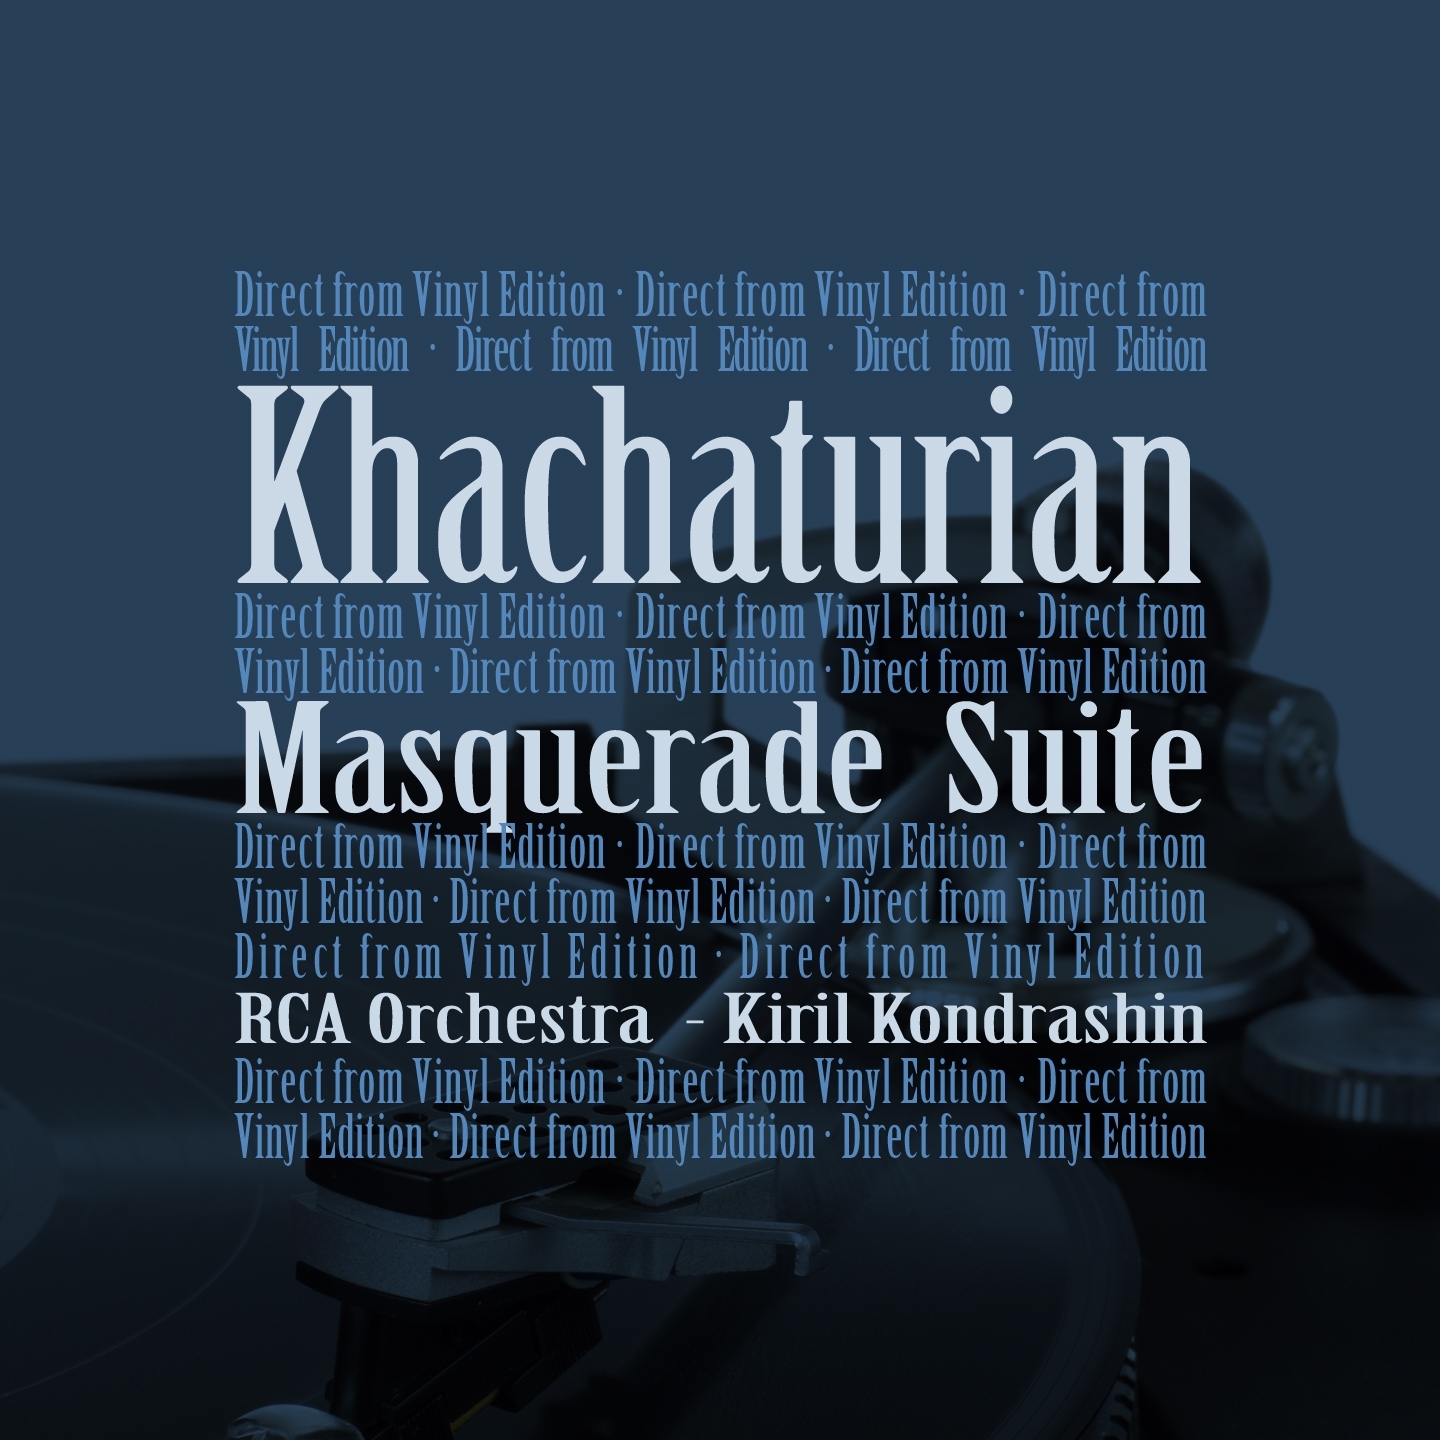 Masquerade Suite: I. Waltz